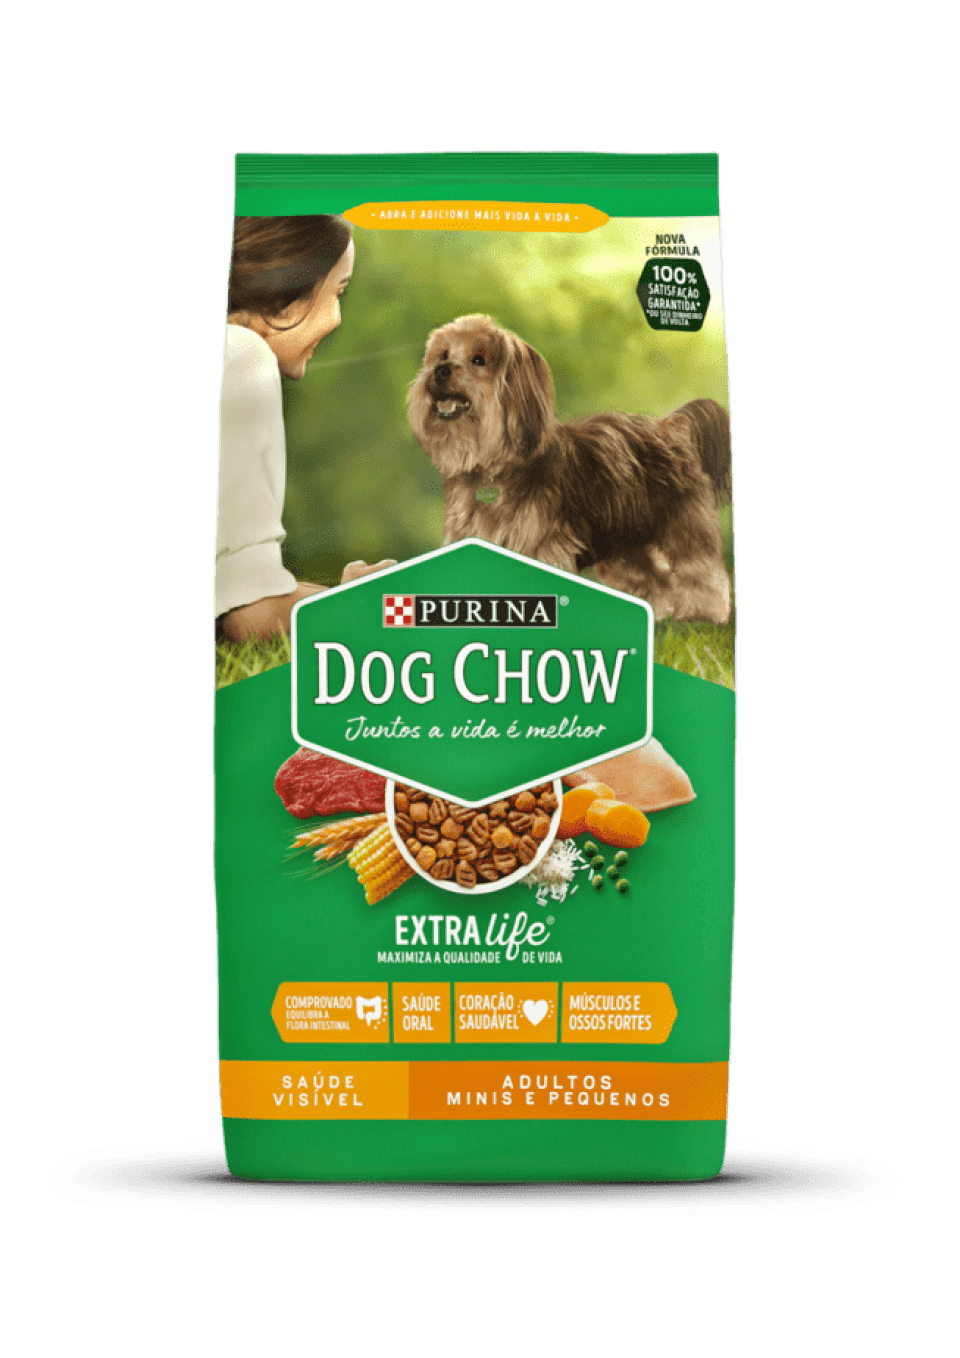 Dog Chow is goed hondenvoer? Leer meer over de hoofdingrediënten